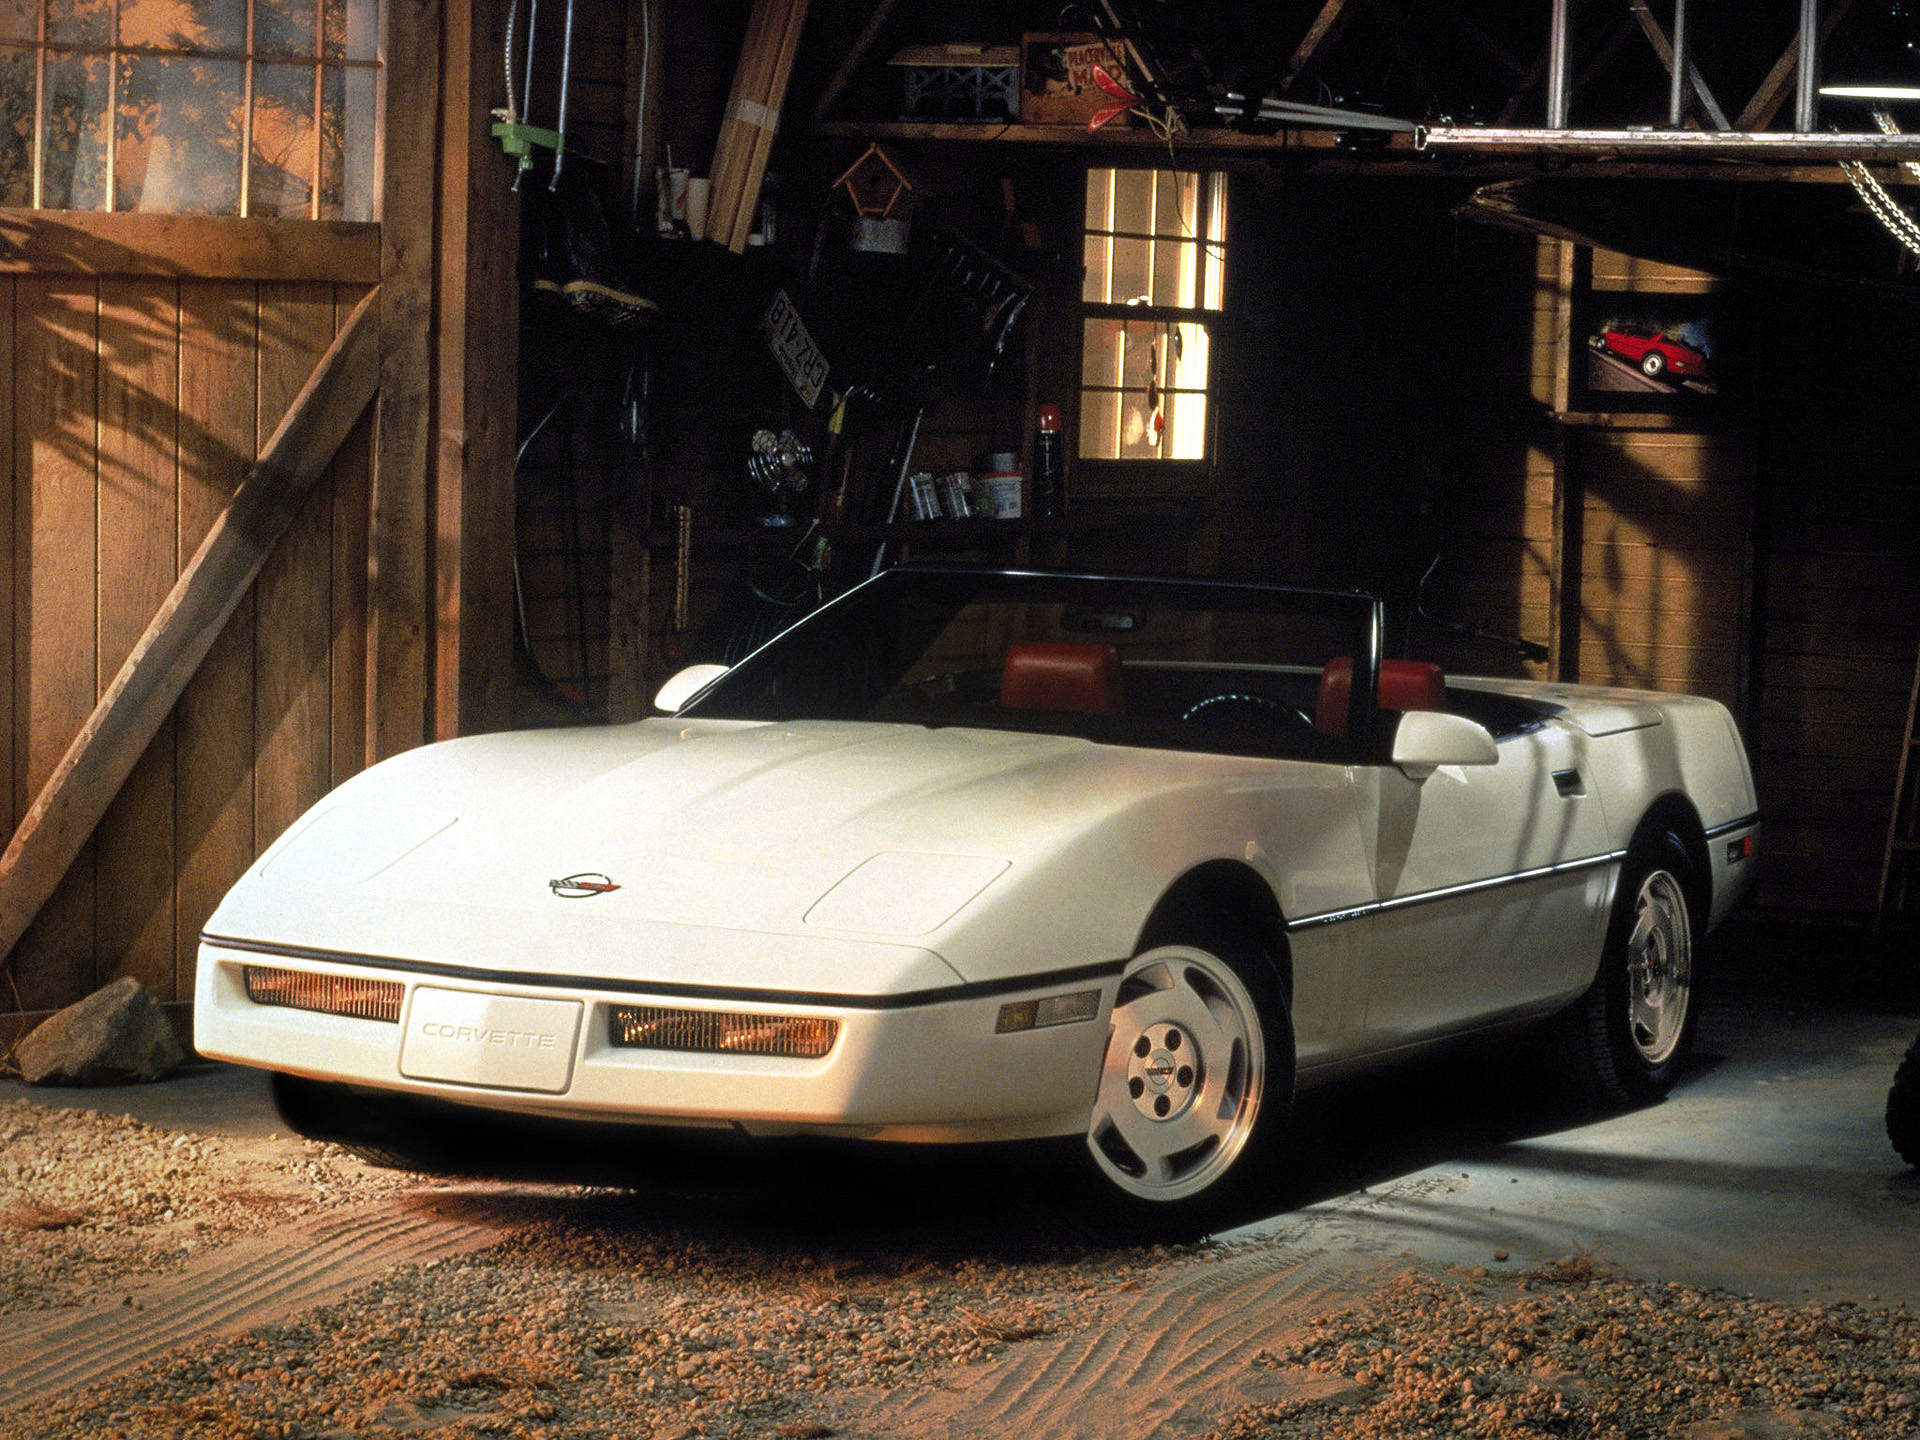 C4 Corvette In A Garage